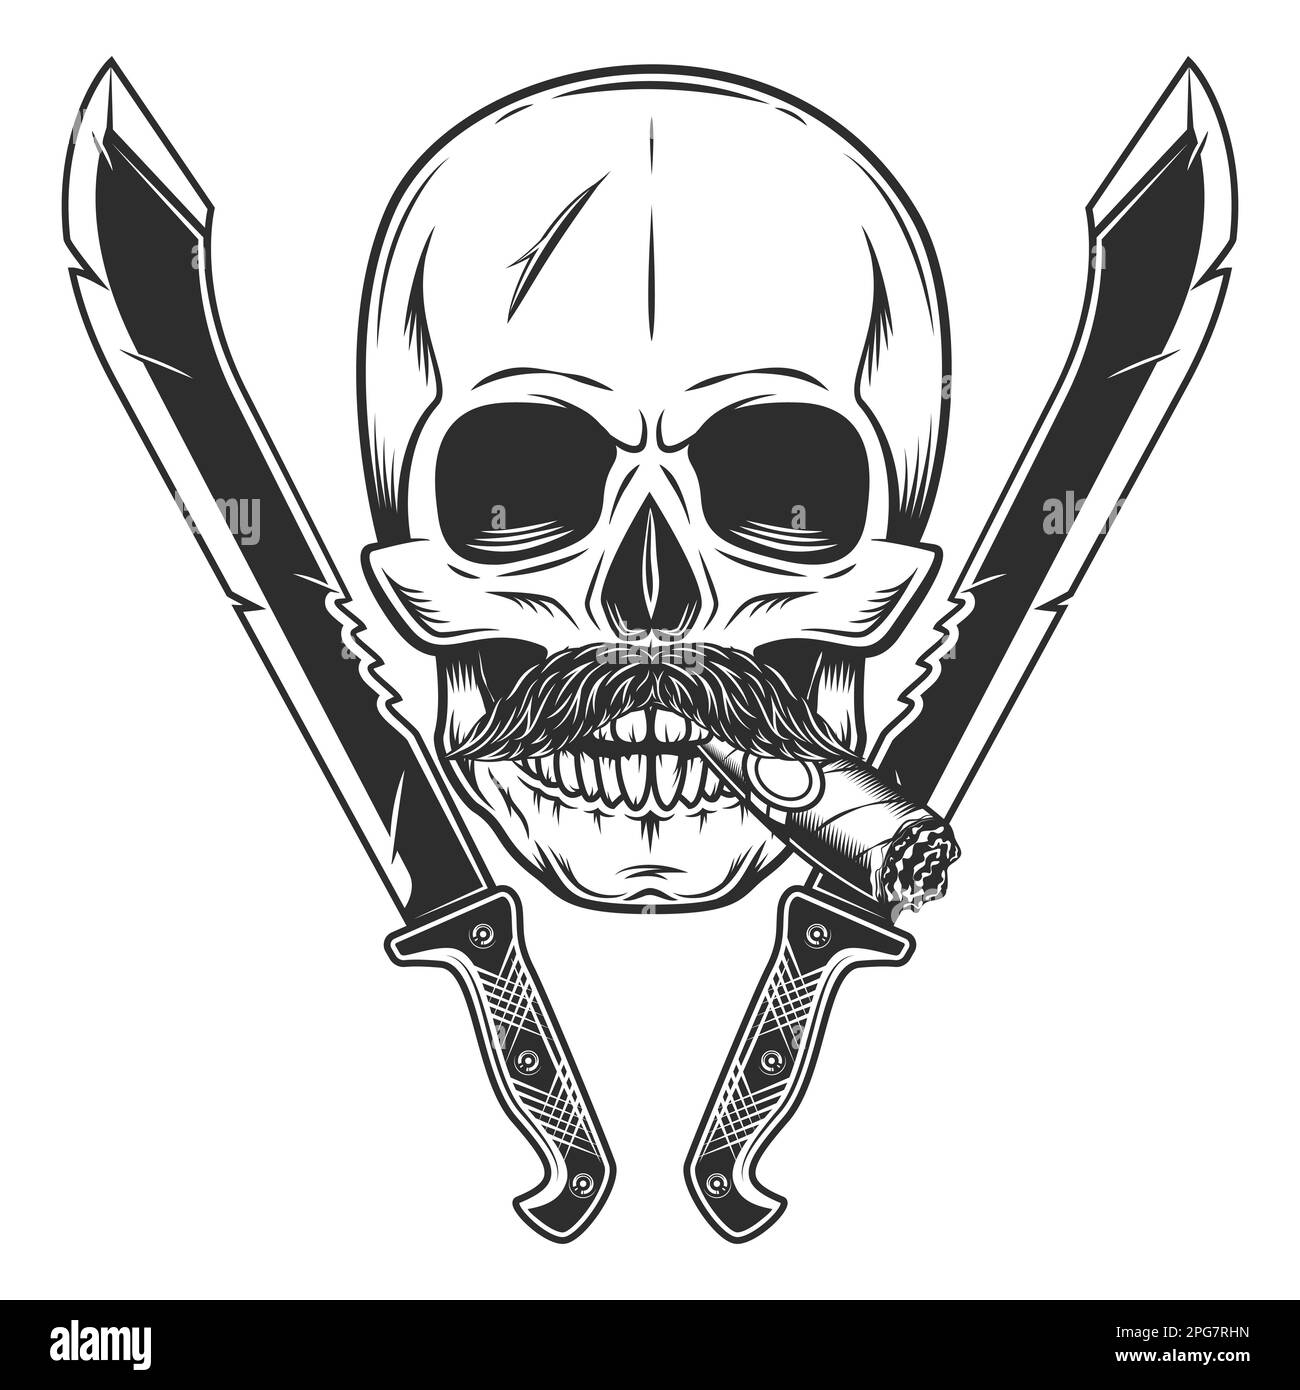 Cráneo fumando cigarro o cigarrillo con bigote y machete cruzado cuchillo afilado arma cuerpo a cuerpo del cazador en la selva. Blanco y negro Foto de stock